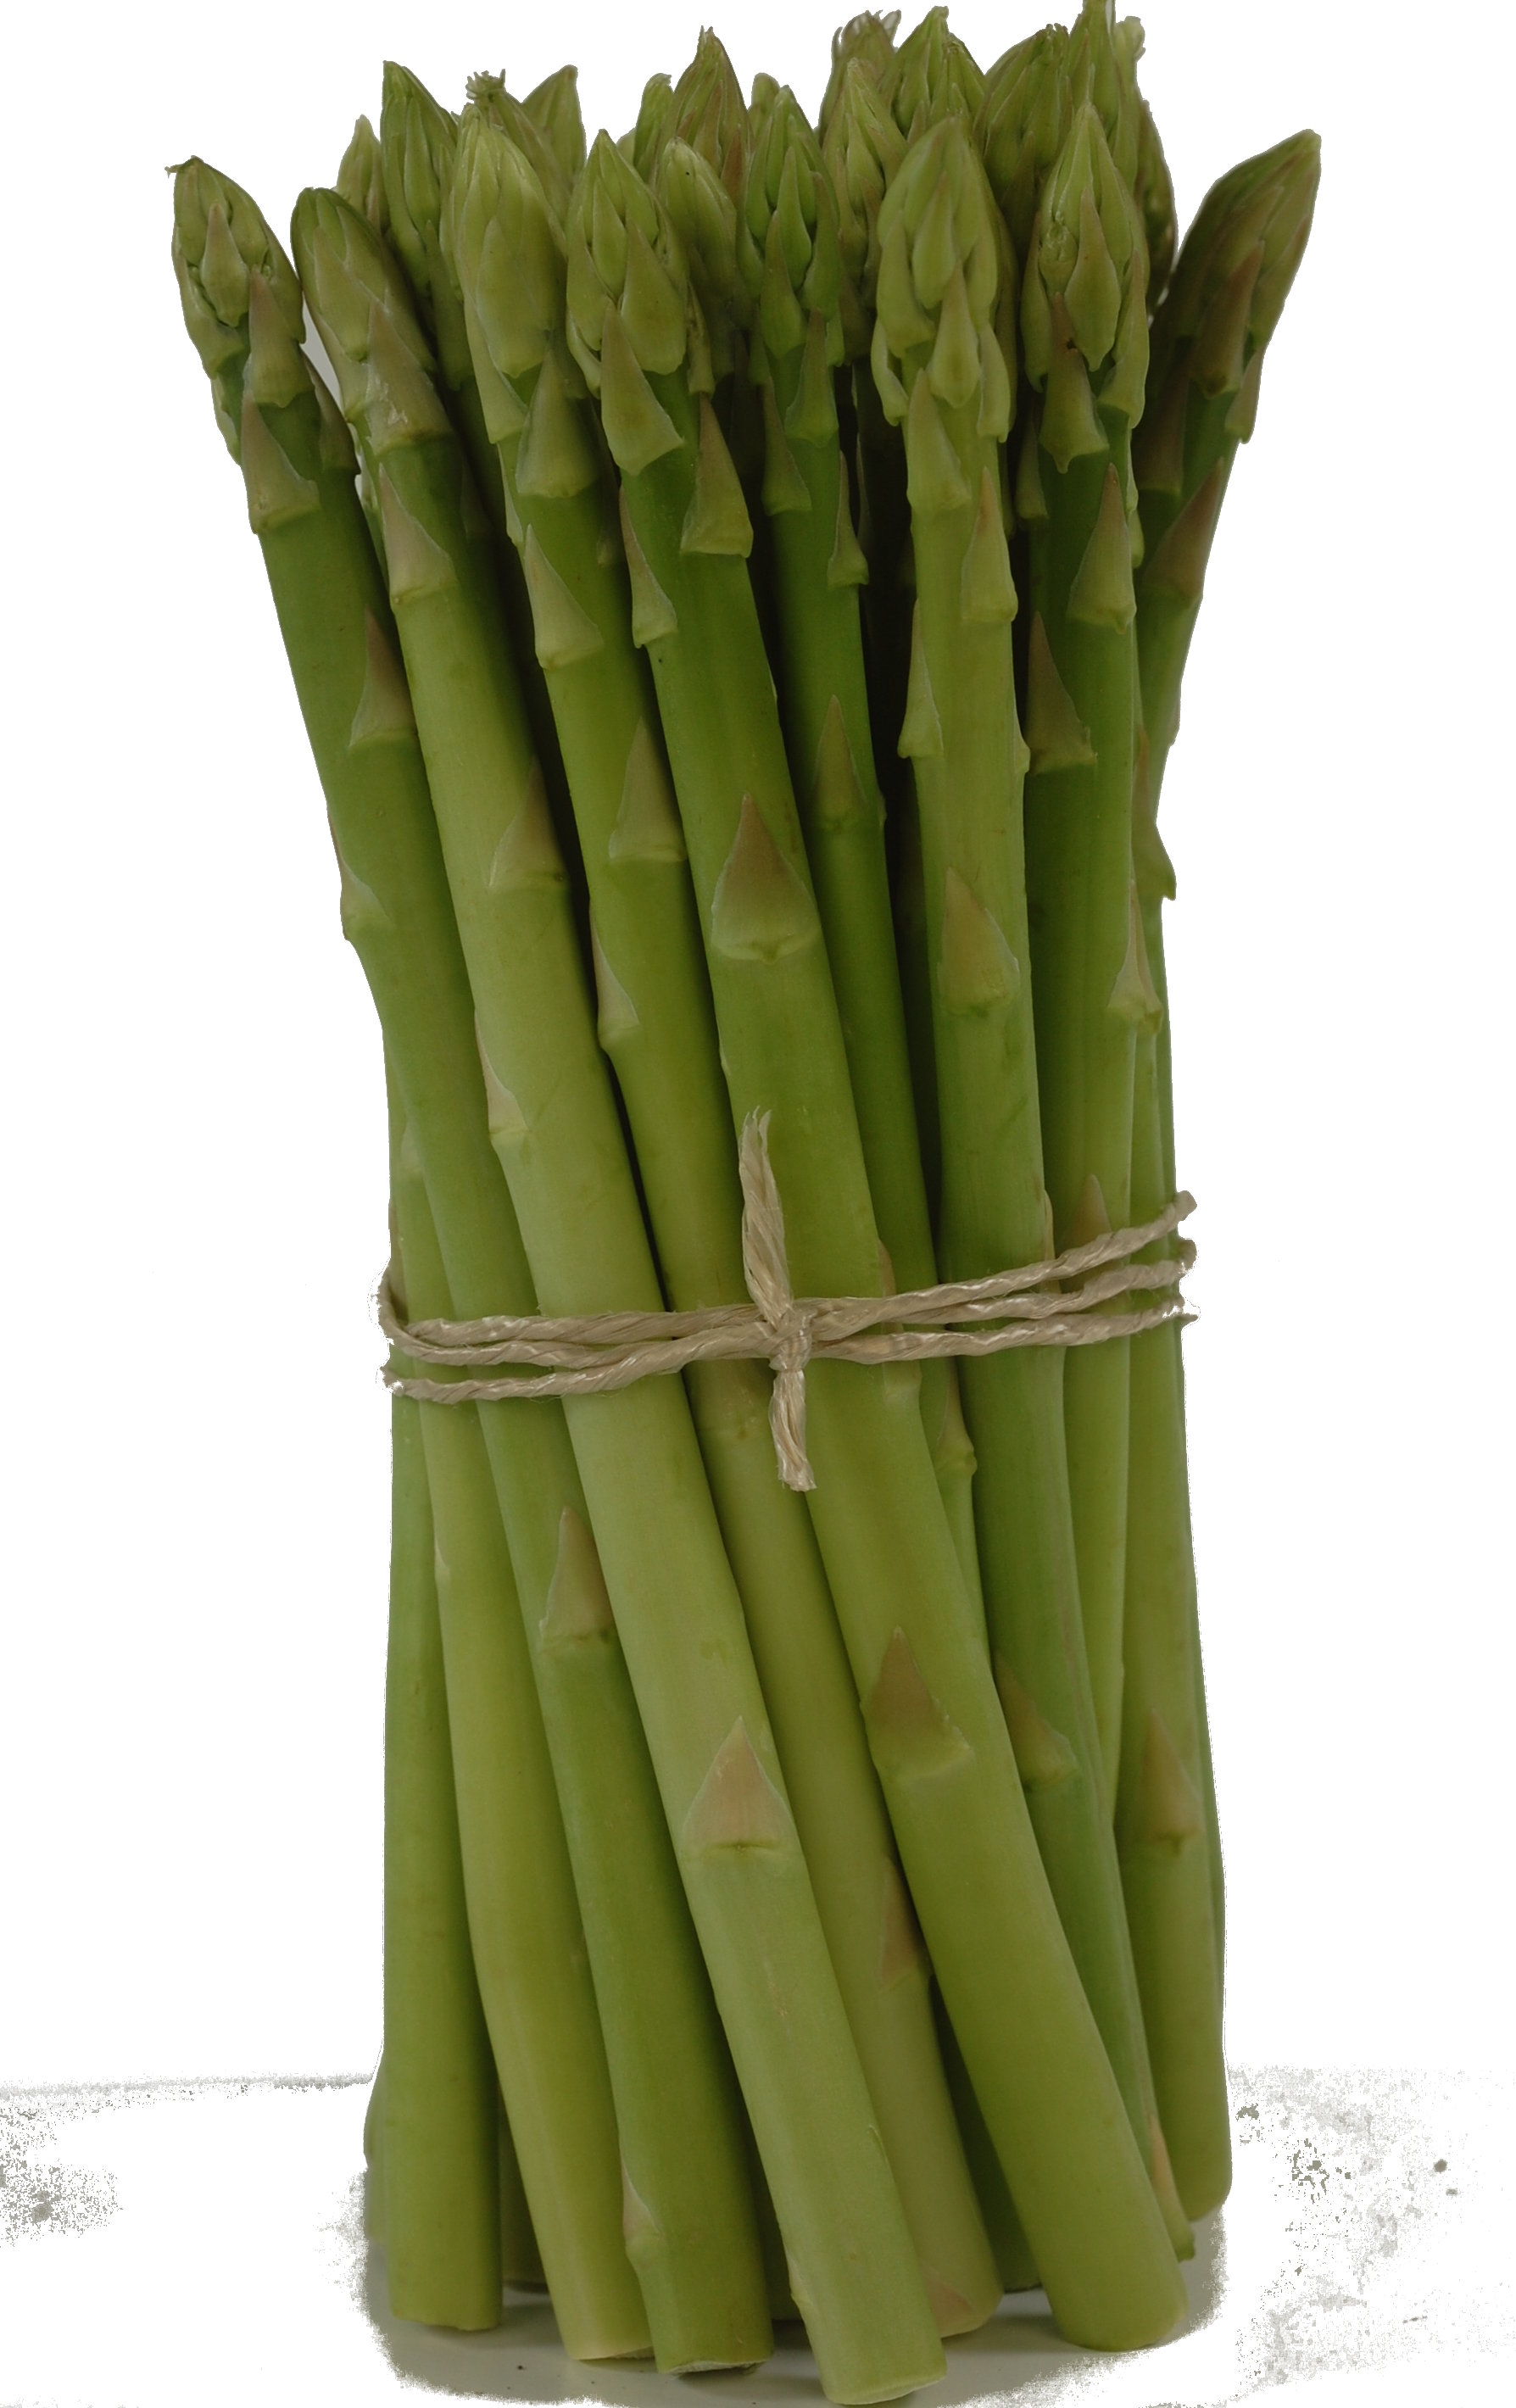 Asparagus - Green